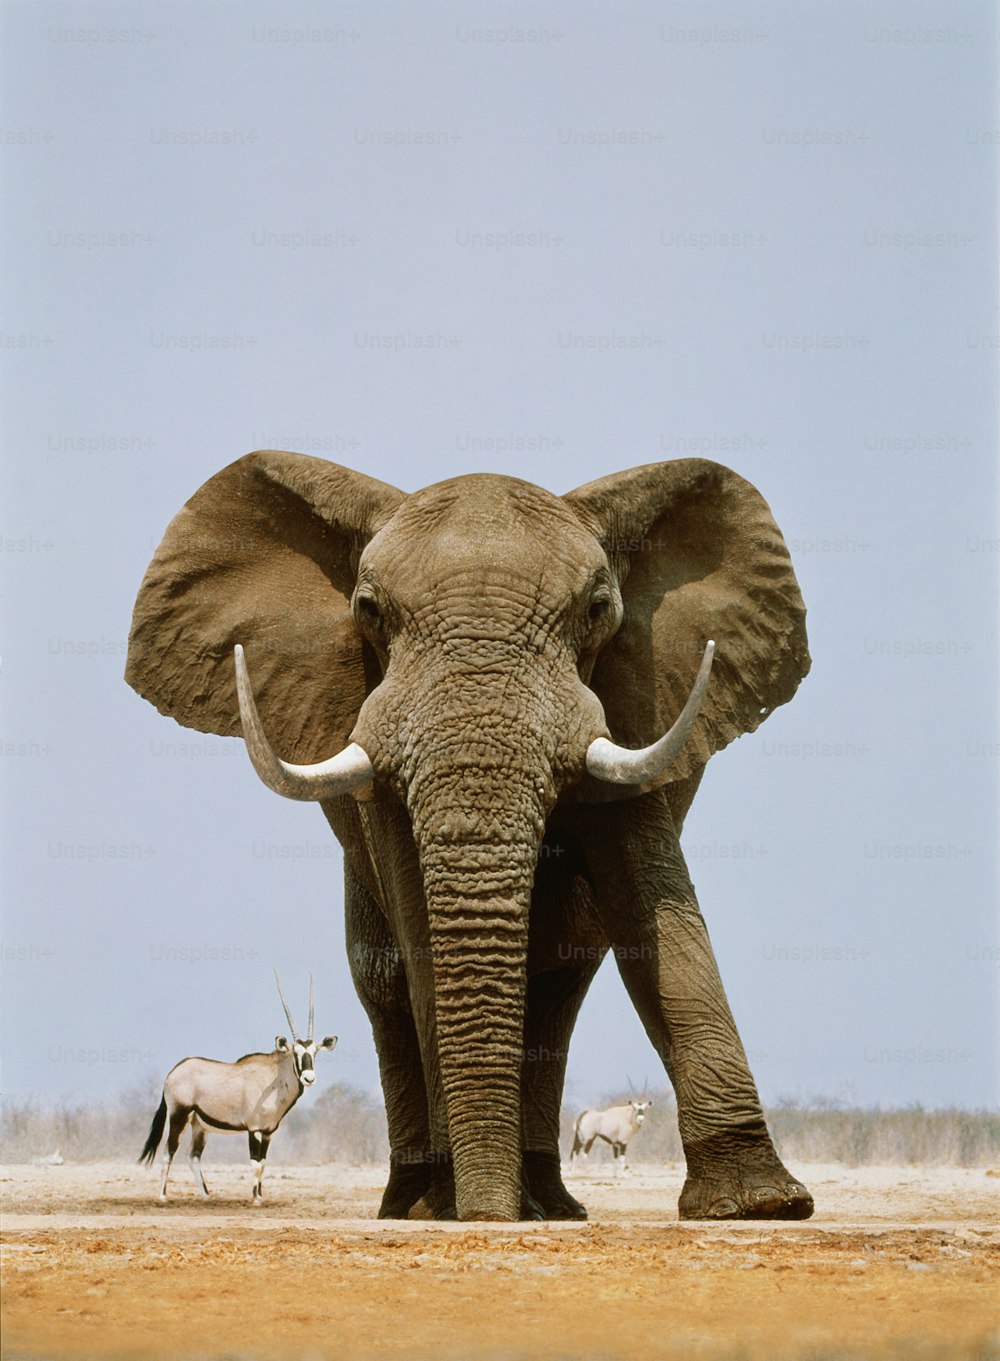 Elefante africano nombre latino: Loxodonta africana. Gemsbok nombre latino: Oryx gazella. Los elefantes africanos son nativos de toda África al sur del Sahara. Las gemsboks son originarias de Namibia, Angola, Botsuana, Zimbabue, Tanzania y Sudáfrica.